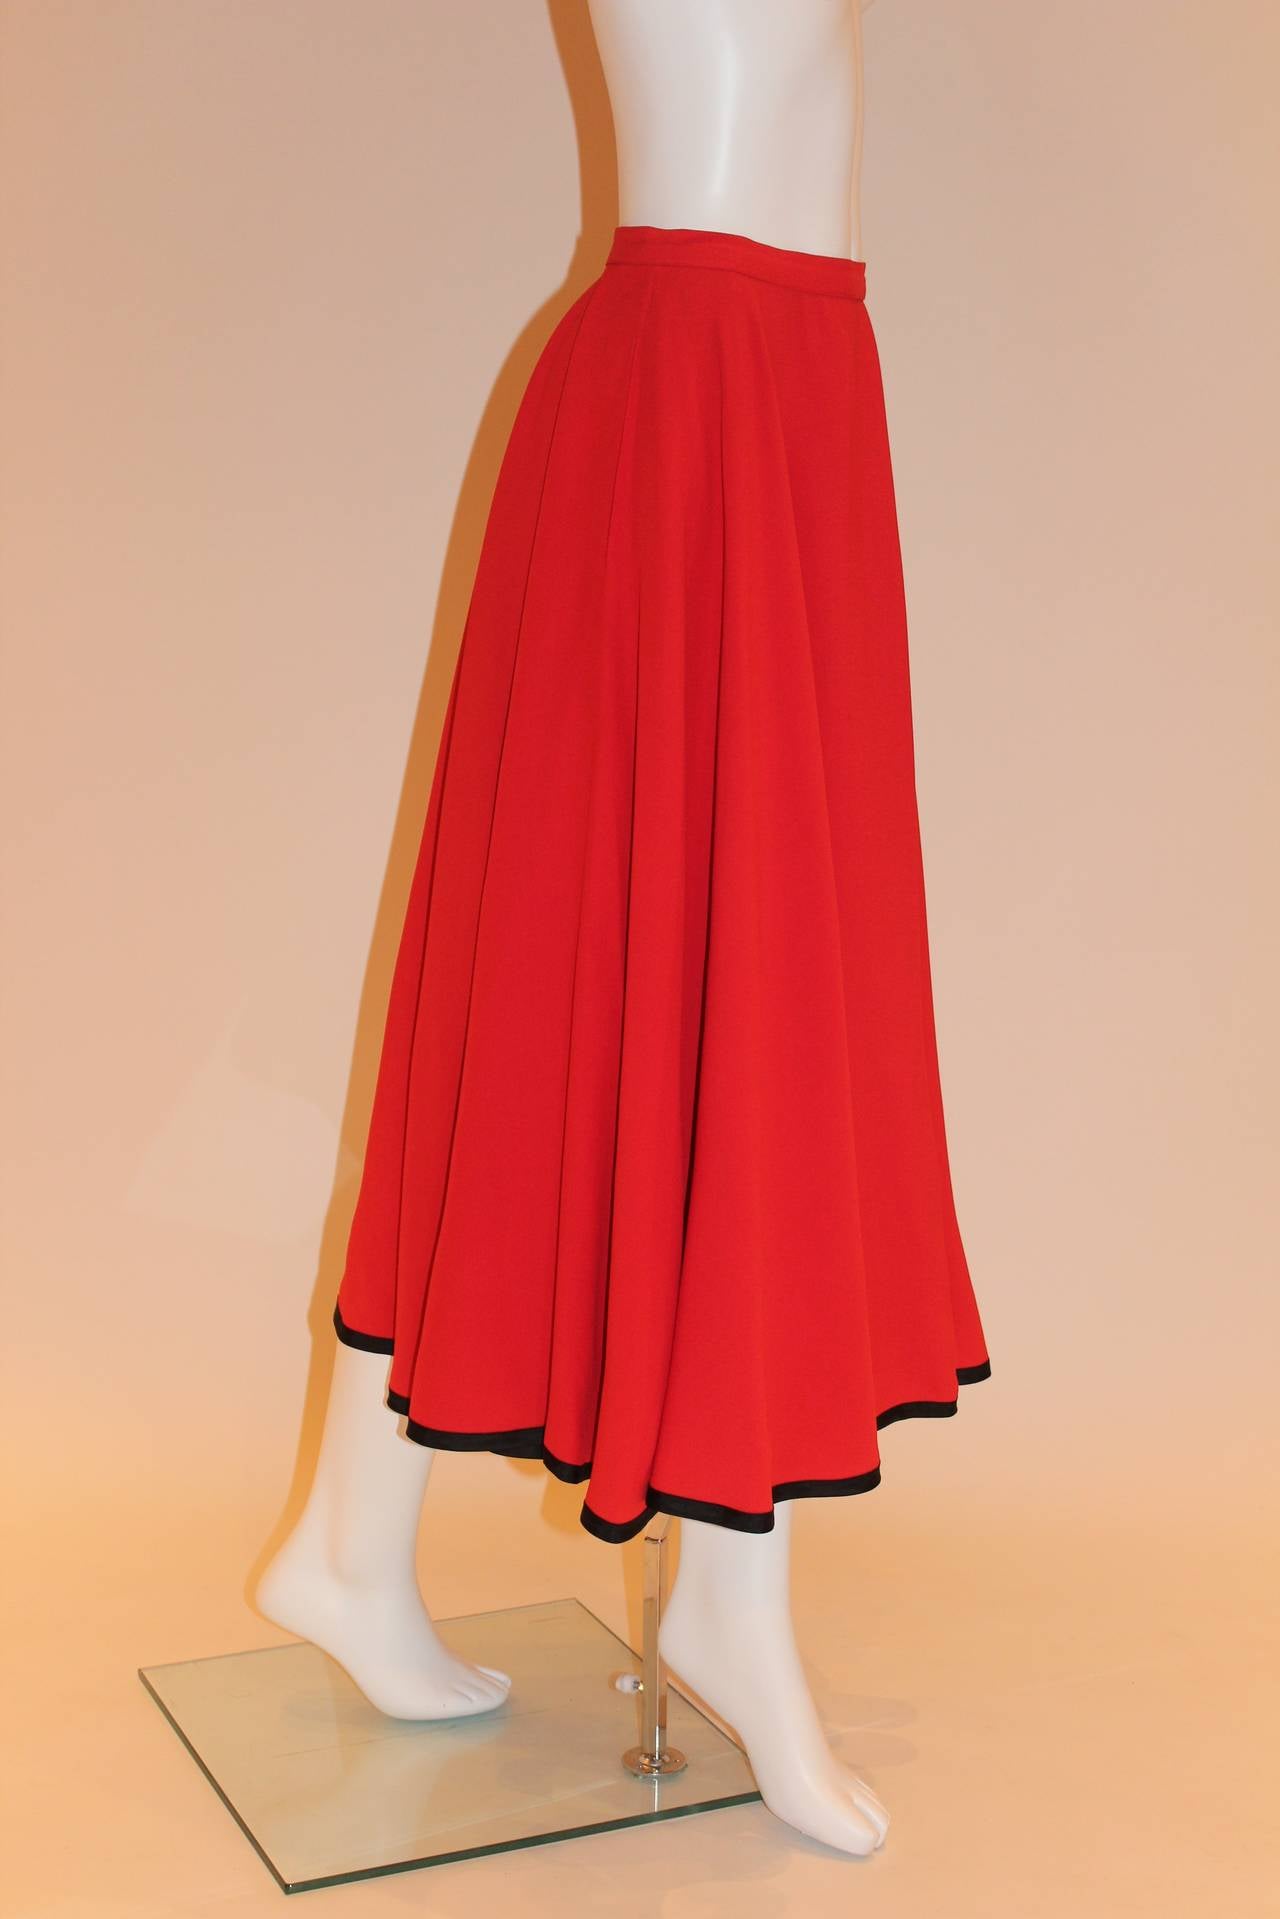 Yves Saint Laurent Rive Gauche Vintage Red Skirt 2